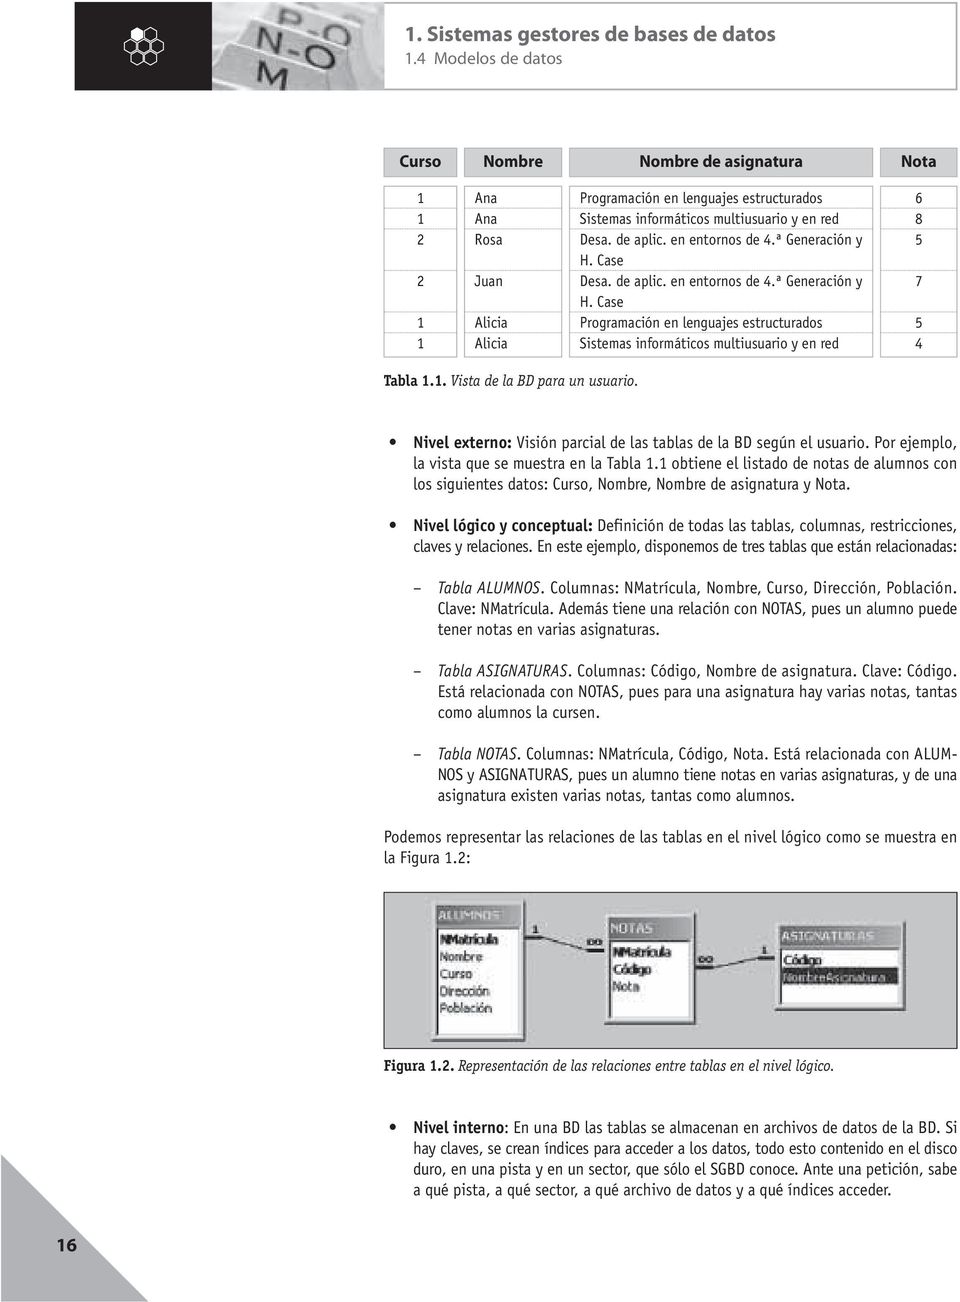 1. Vista de la BD para un usuario. Nivel externo: Visión parcial de las tablas de la BD según el usuario. Por ejemplo, la vista que se muestra en la Tabla 1.